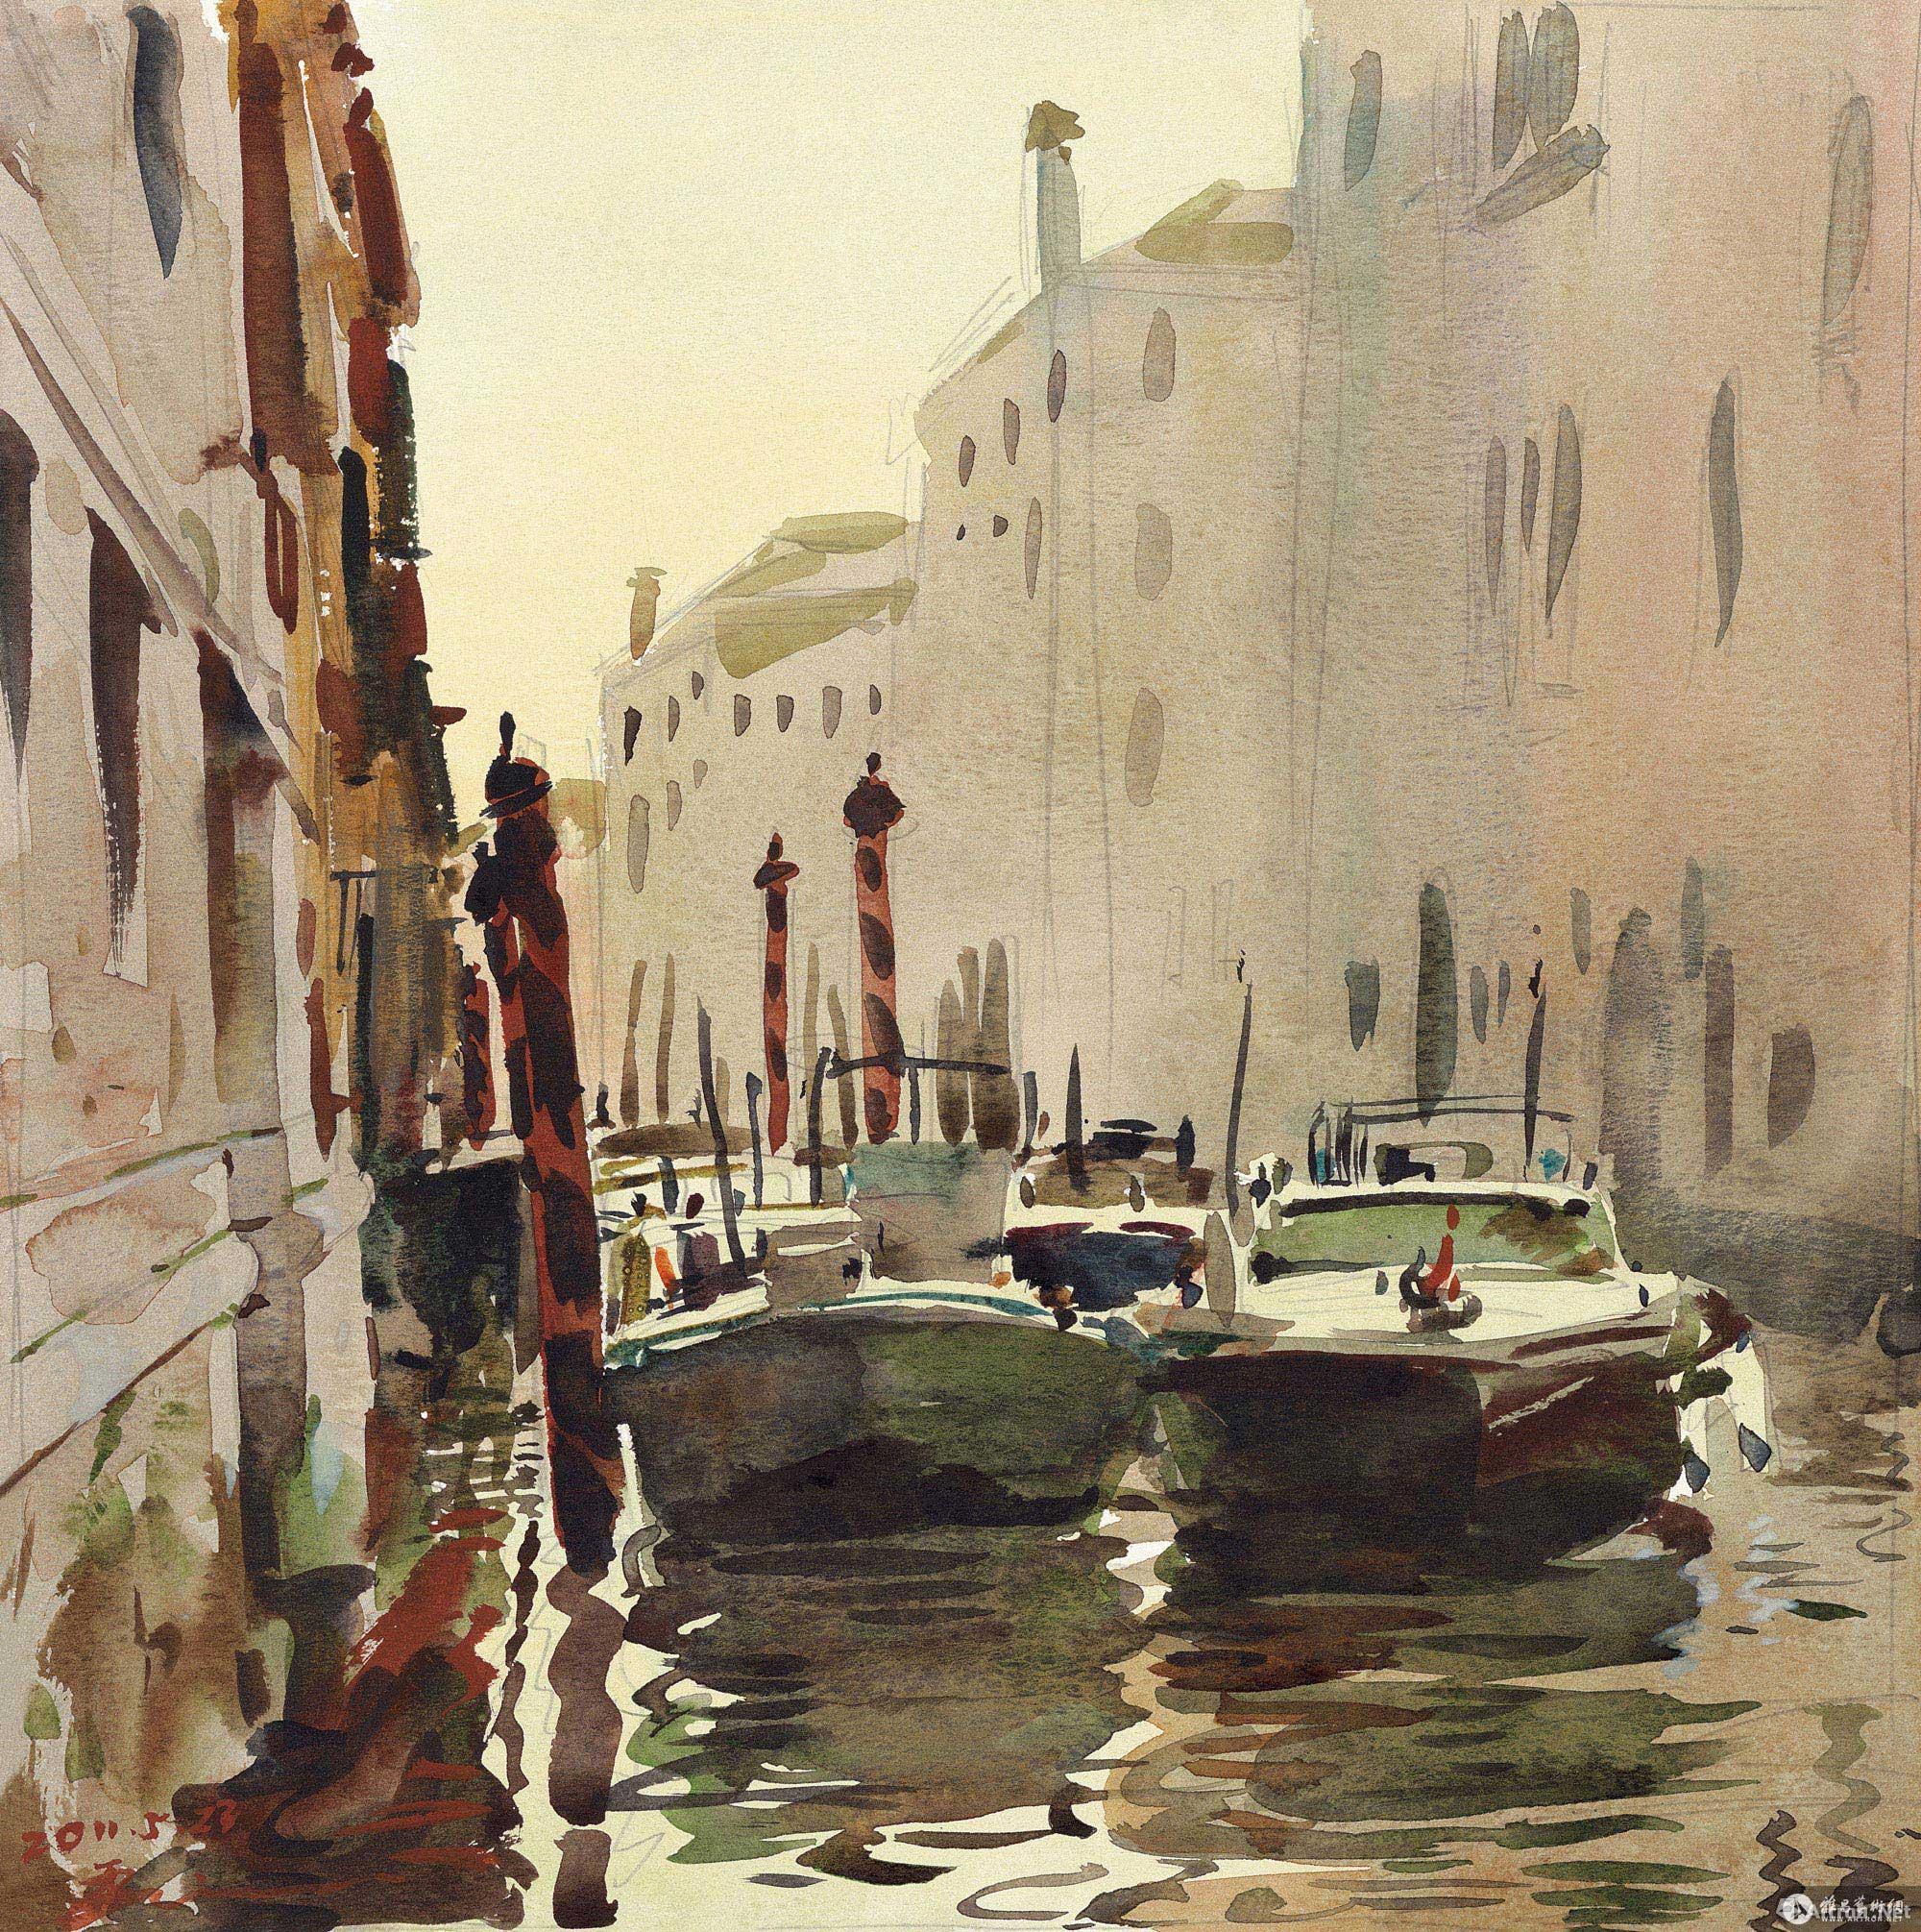 威尼斯印象No.8 No.8 of the Impressions of Venice